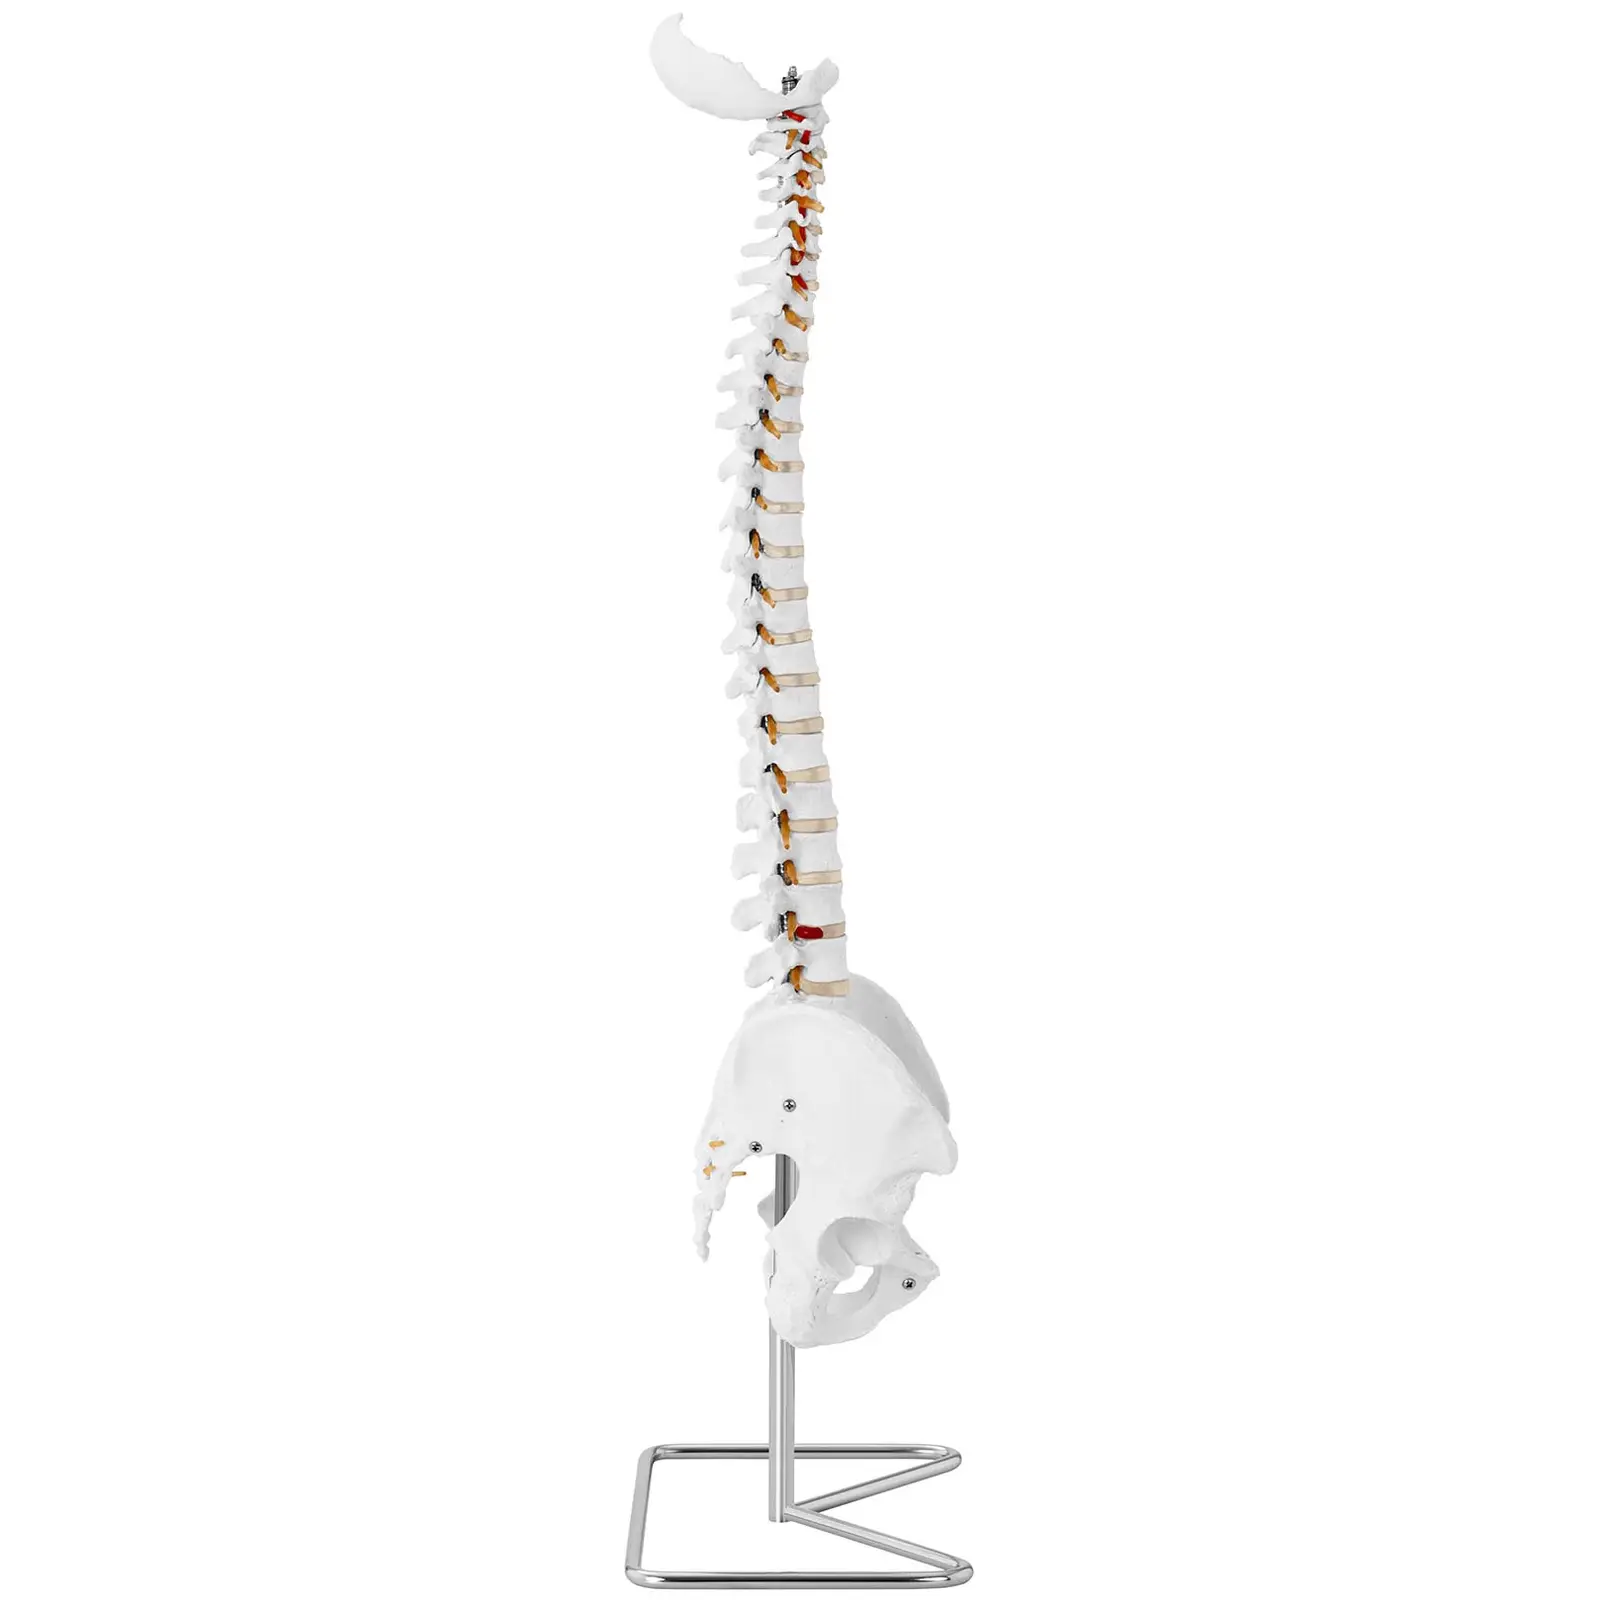 Maquette anatomique pelvis humain avec colonne vertébrale - grandeur nature